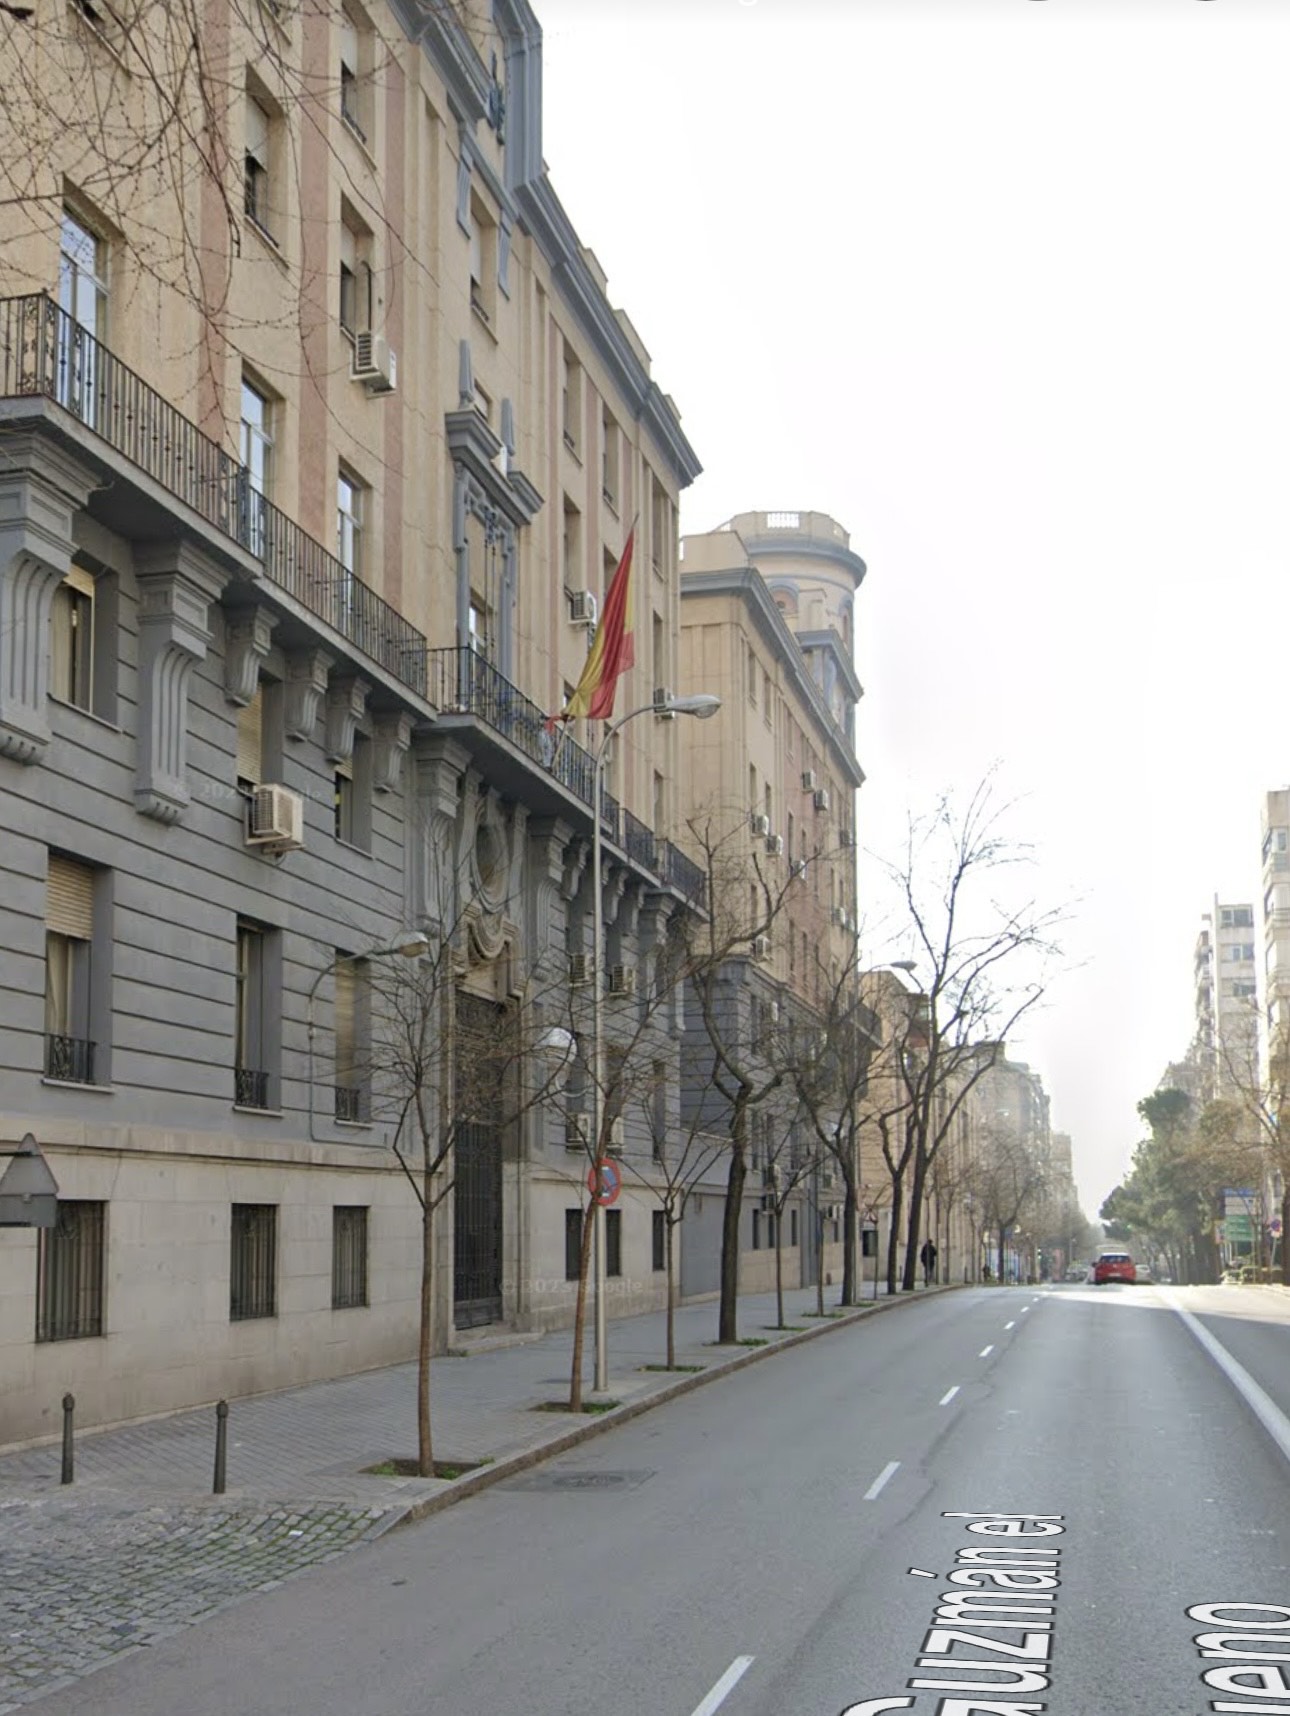 Ministerio del interior-Google Maps- Interior refuerza medidas ante posible atentado yihadista en Semana Santa en España